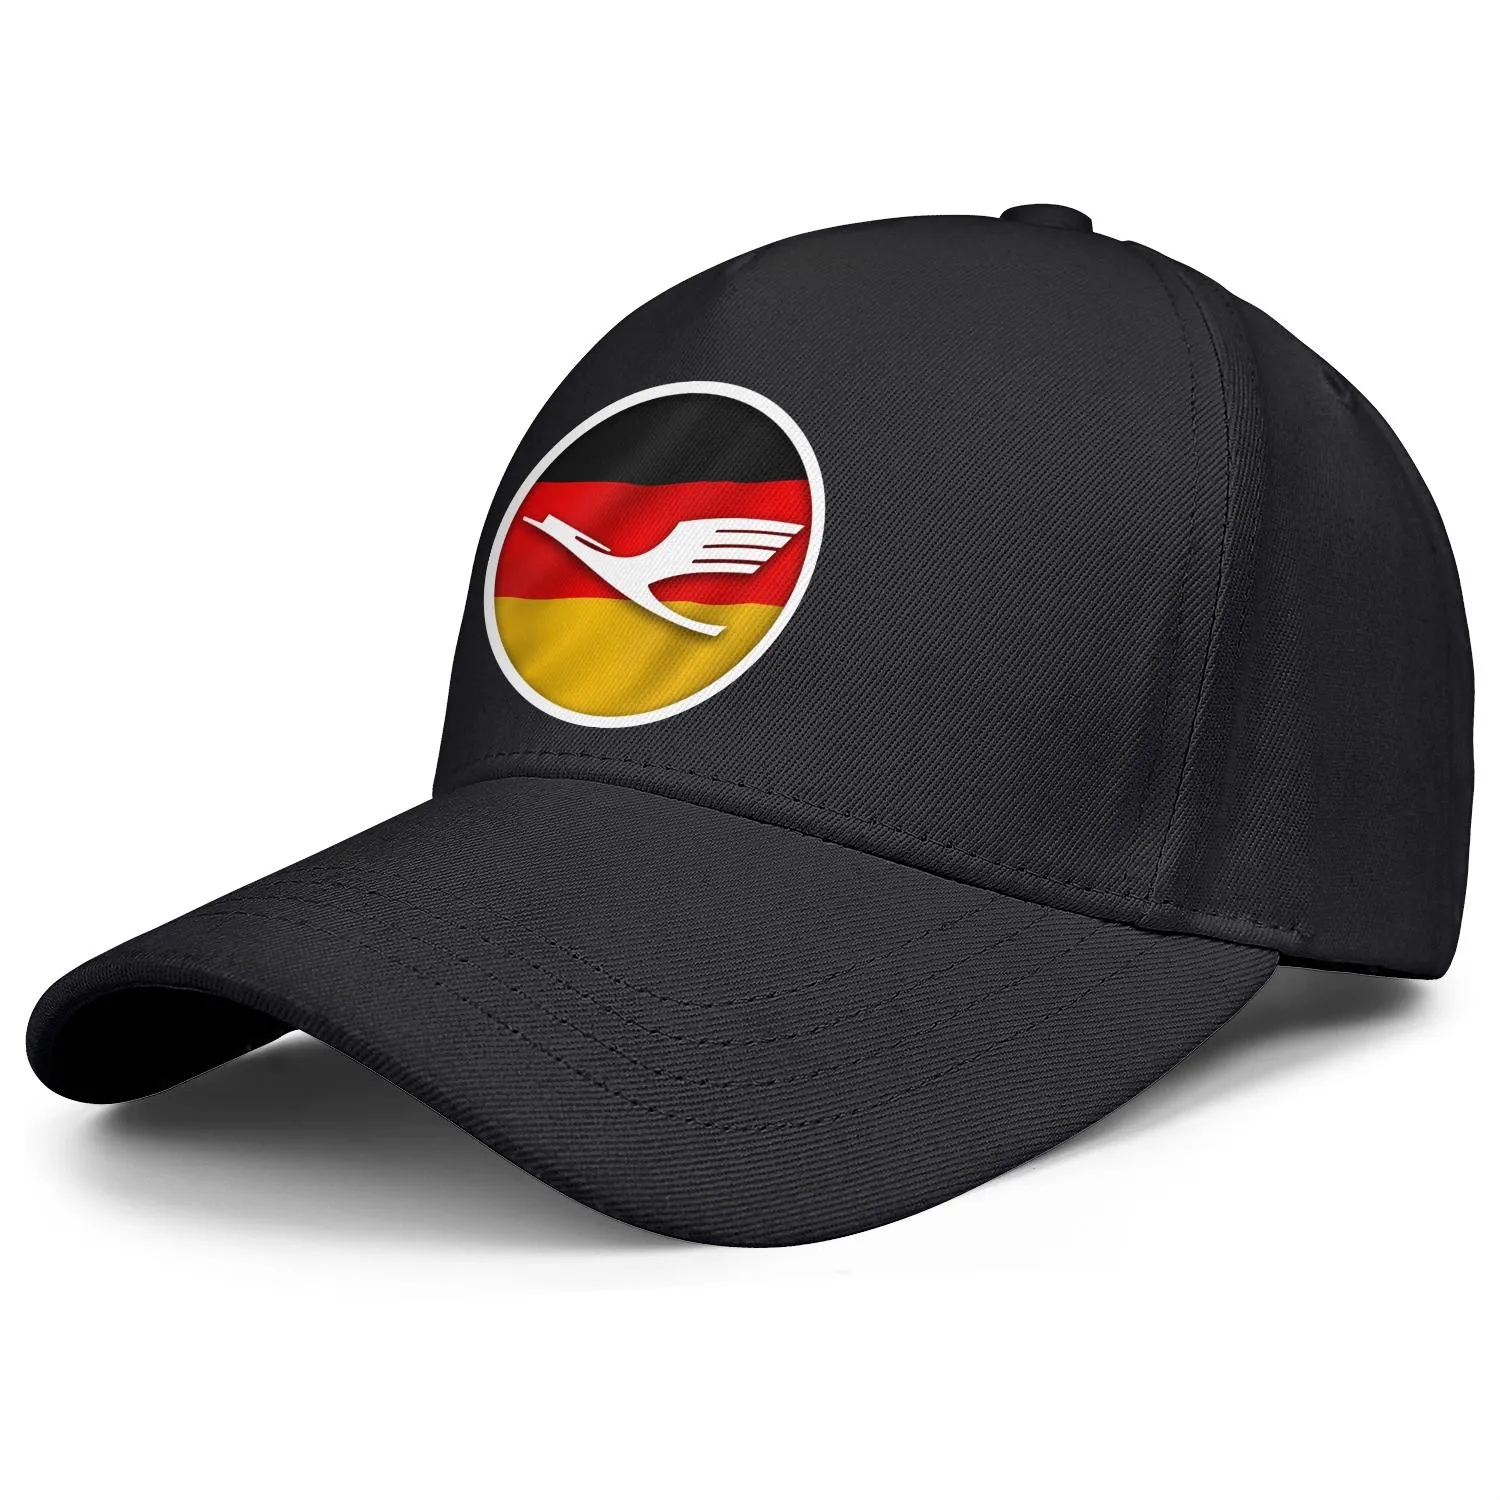 ルフタンサ航空会社のシンボルロゴメンズアンドレディース調整可能トラッカーキャップデザインスポーツチームスタイリッシュな野球ハットドイツの旗ロゴゲイ254U